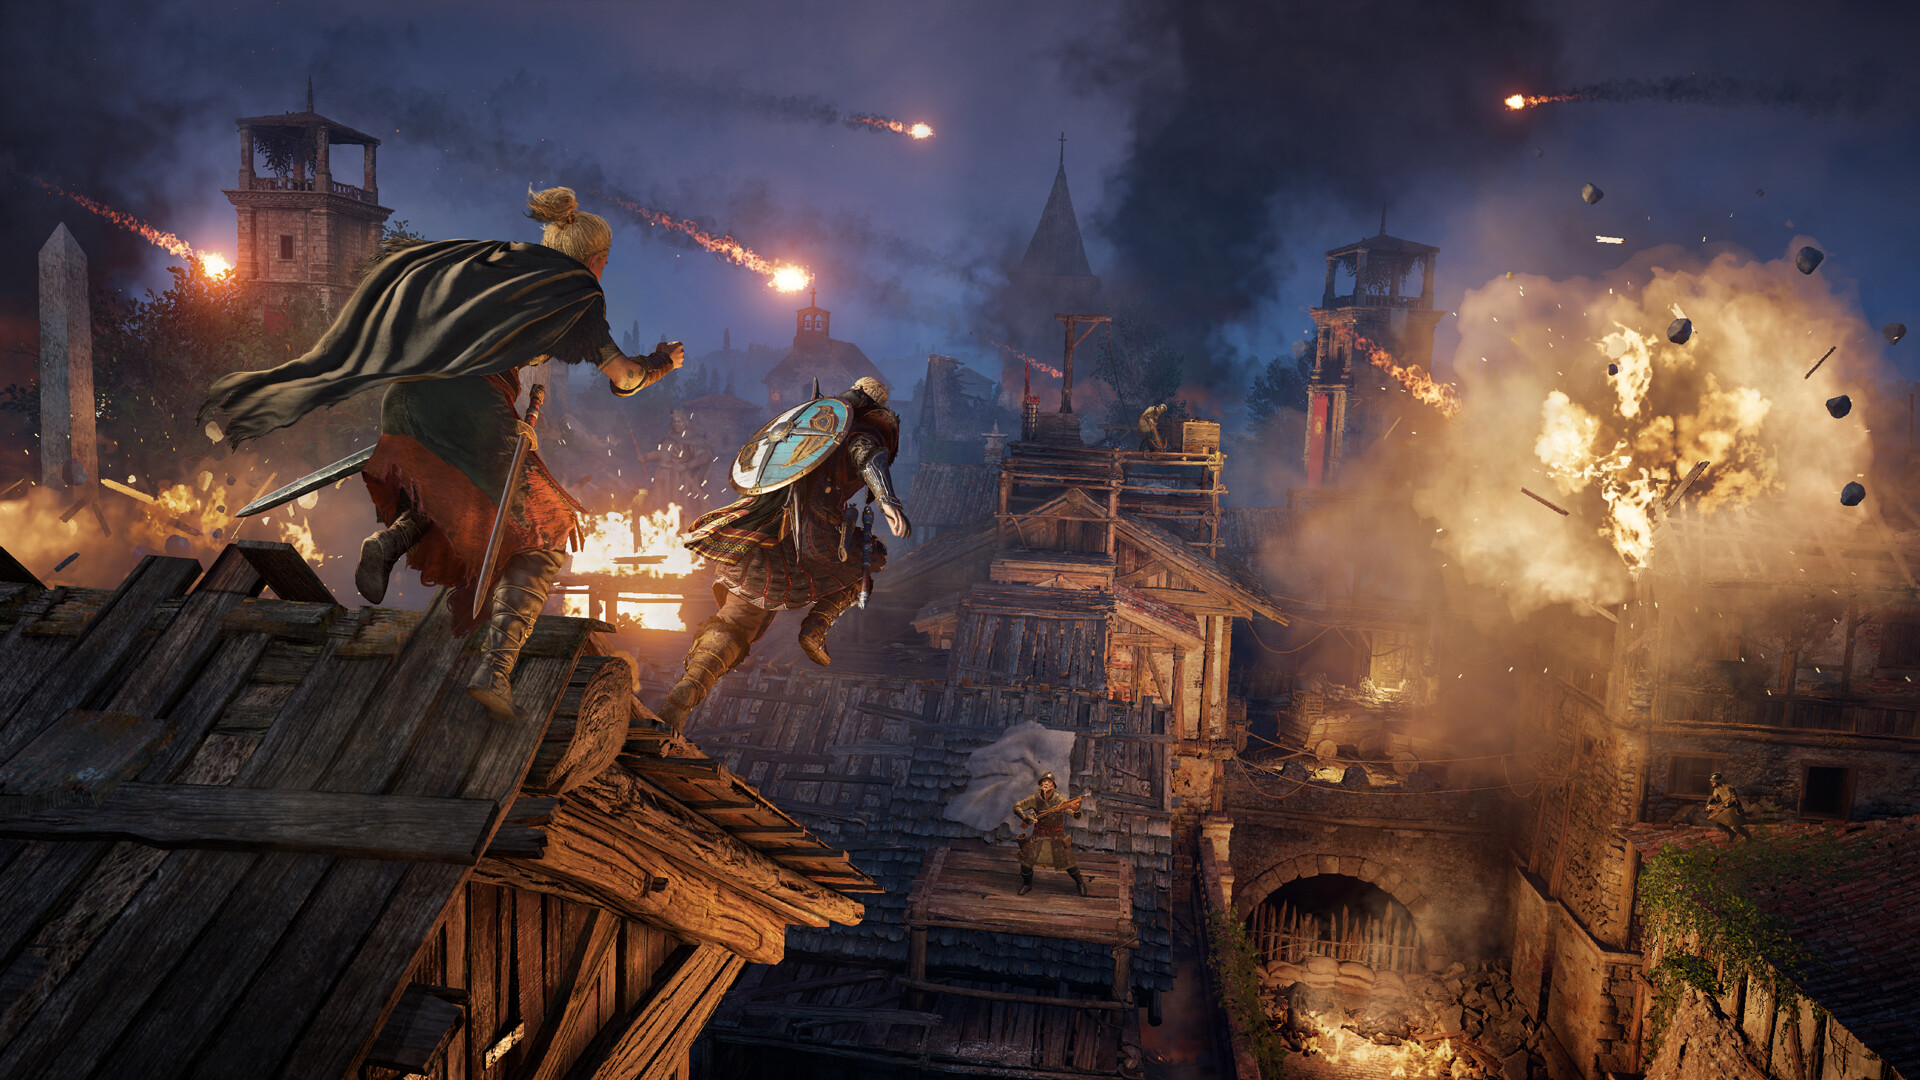 Assassin's Creed® Valhalla - Season Pass on Steam